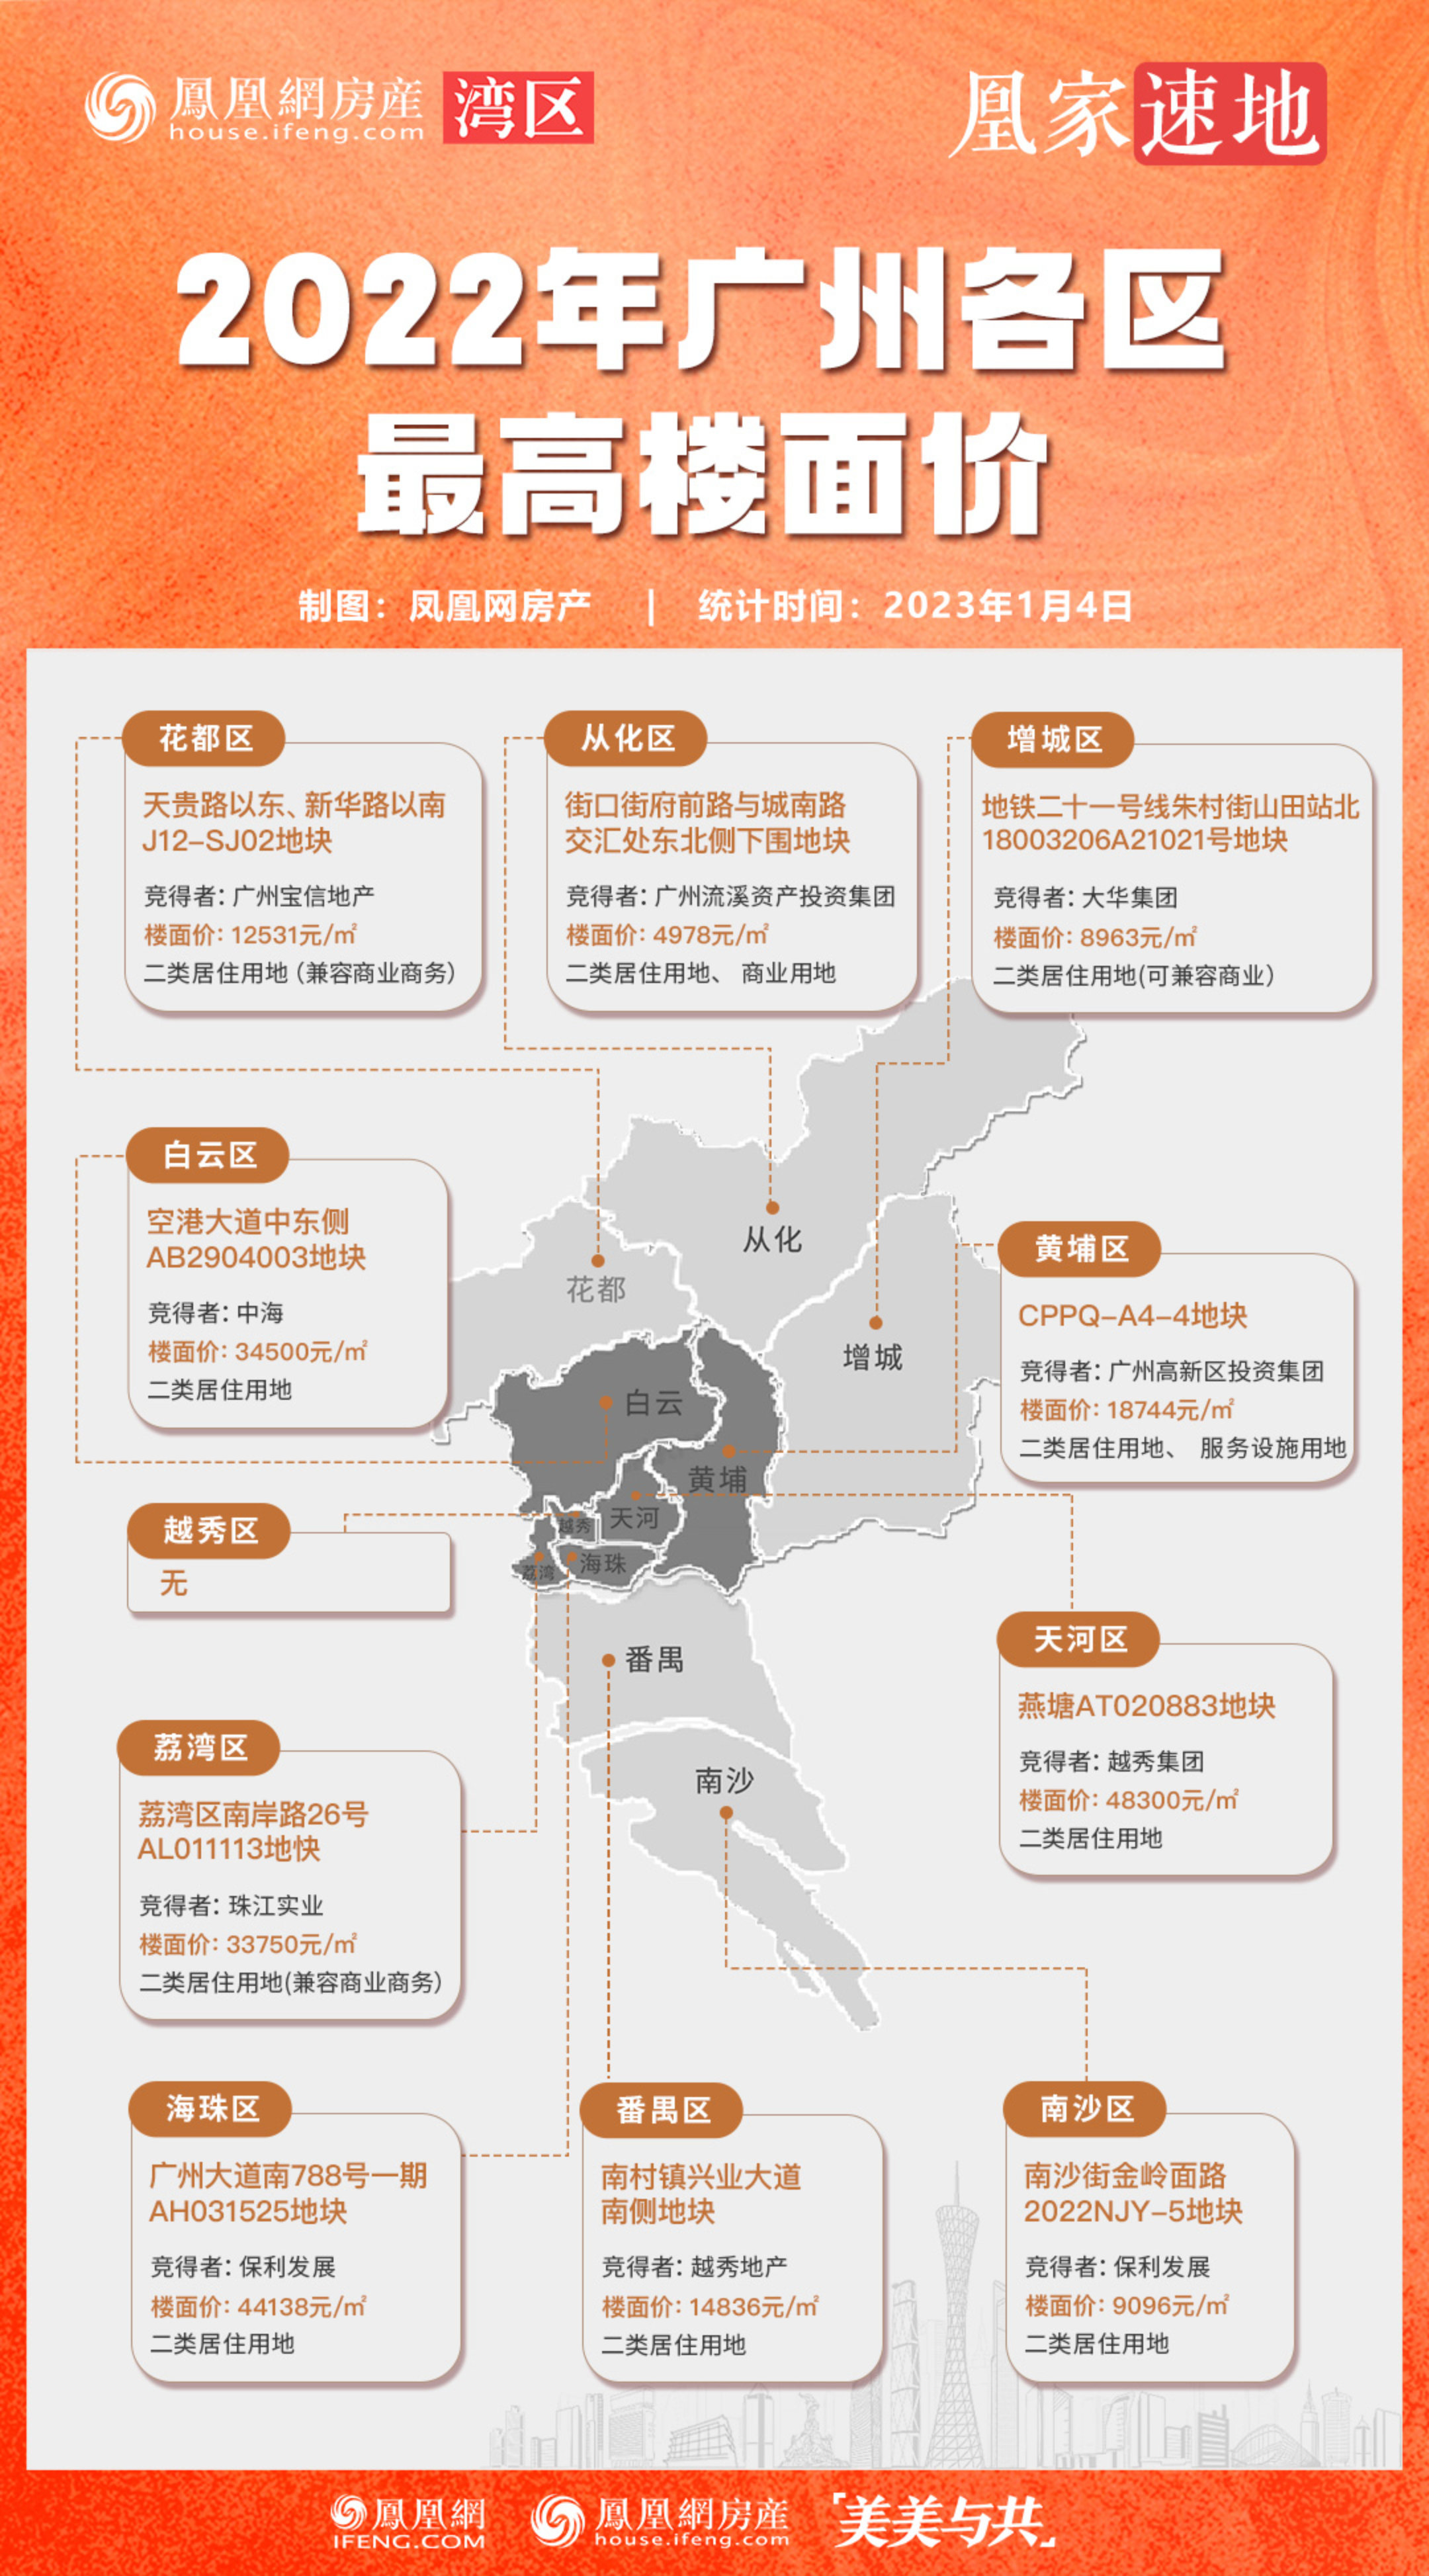 2022年土拍 | 广州各区最高楼面价地块